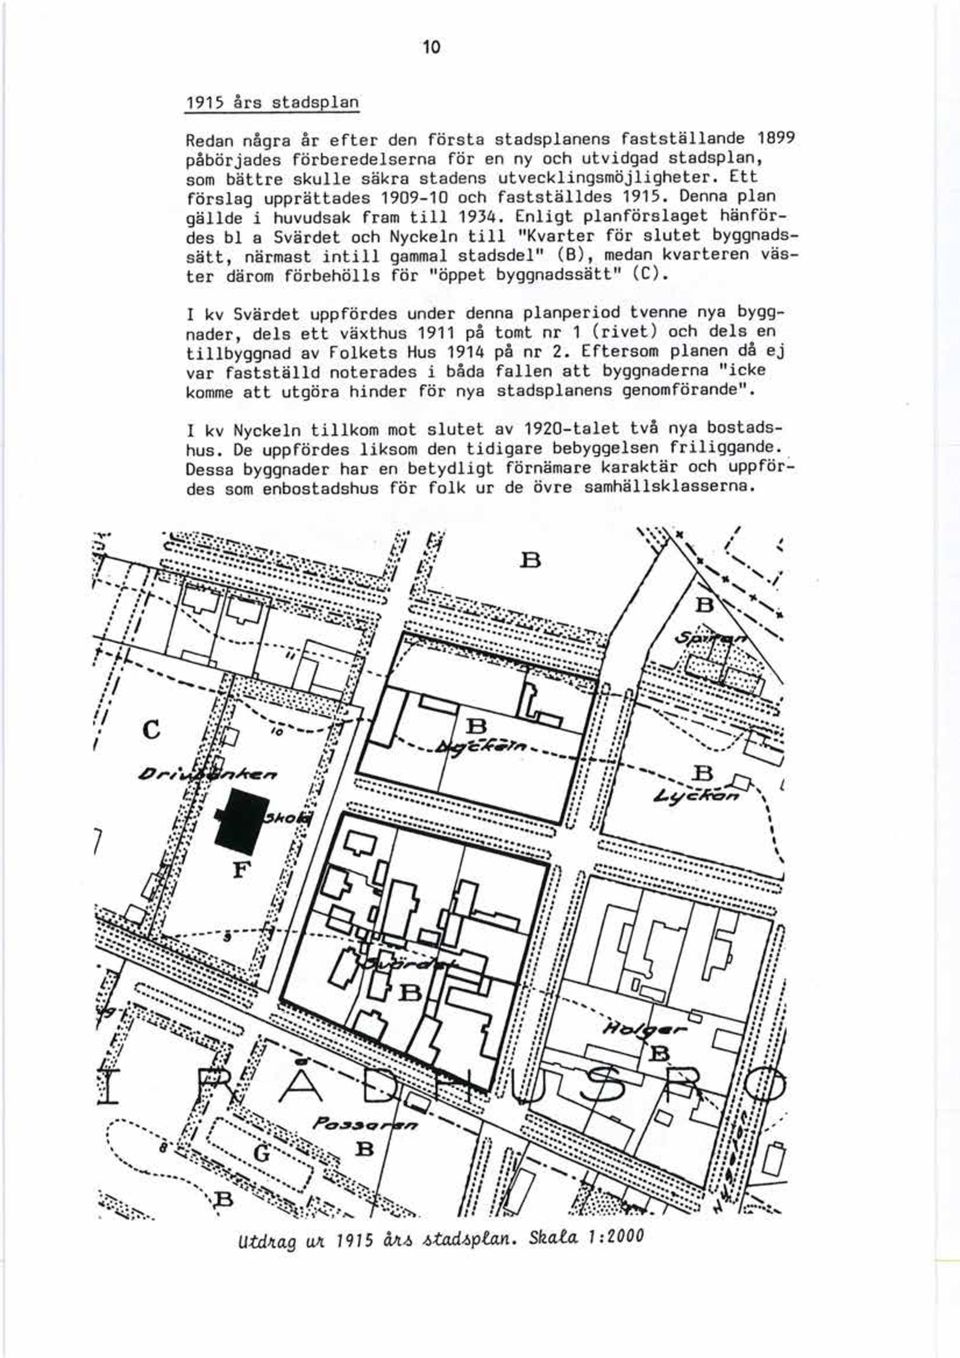 Enligt planförslaget hänfördes bl a Svärdet och Nyckeln till "Kvarter för slutet byggnadssätt, närmast intill gammal stadsdel" (B), medan kvarteren väster därom förbehölls för "öppet byggnadssätt"